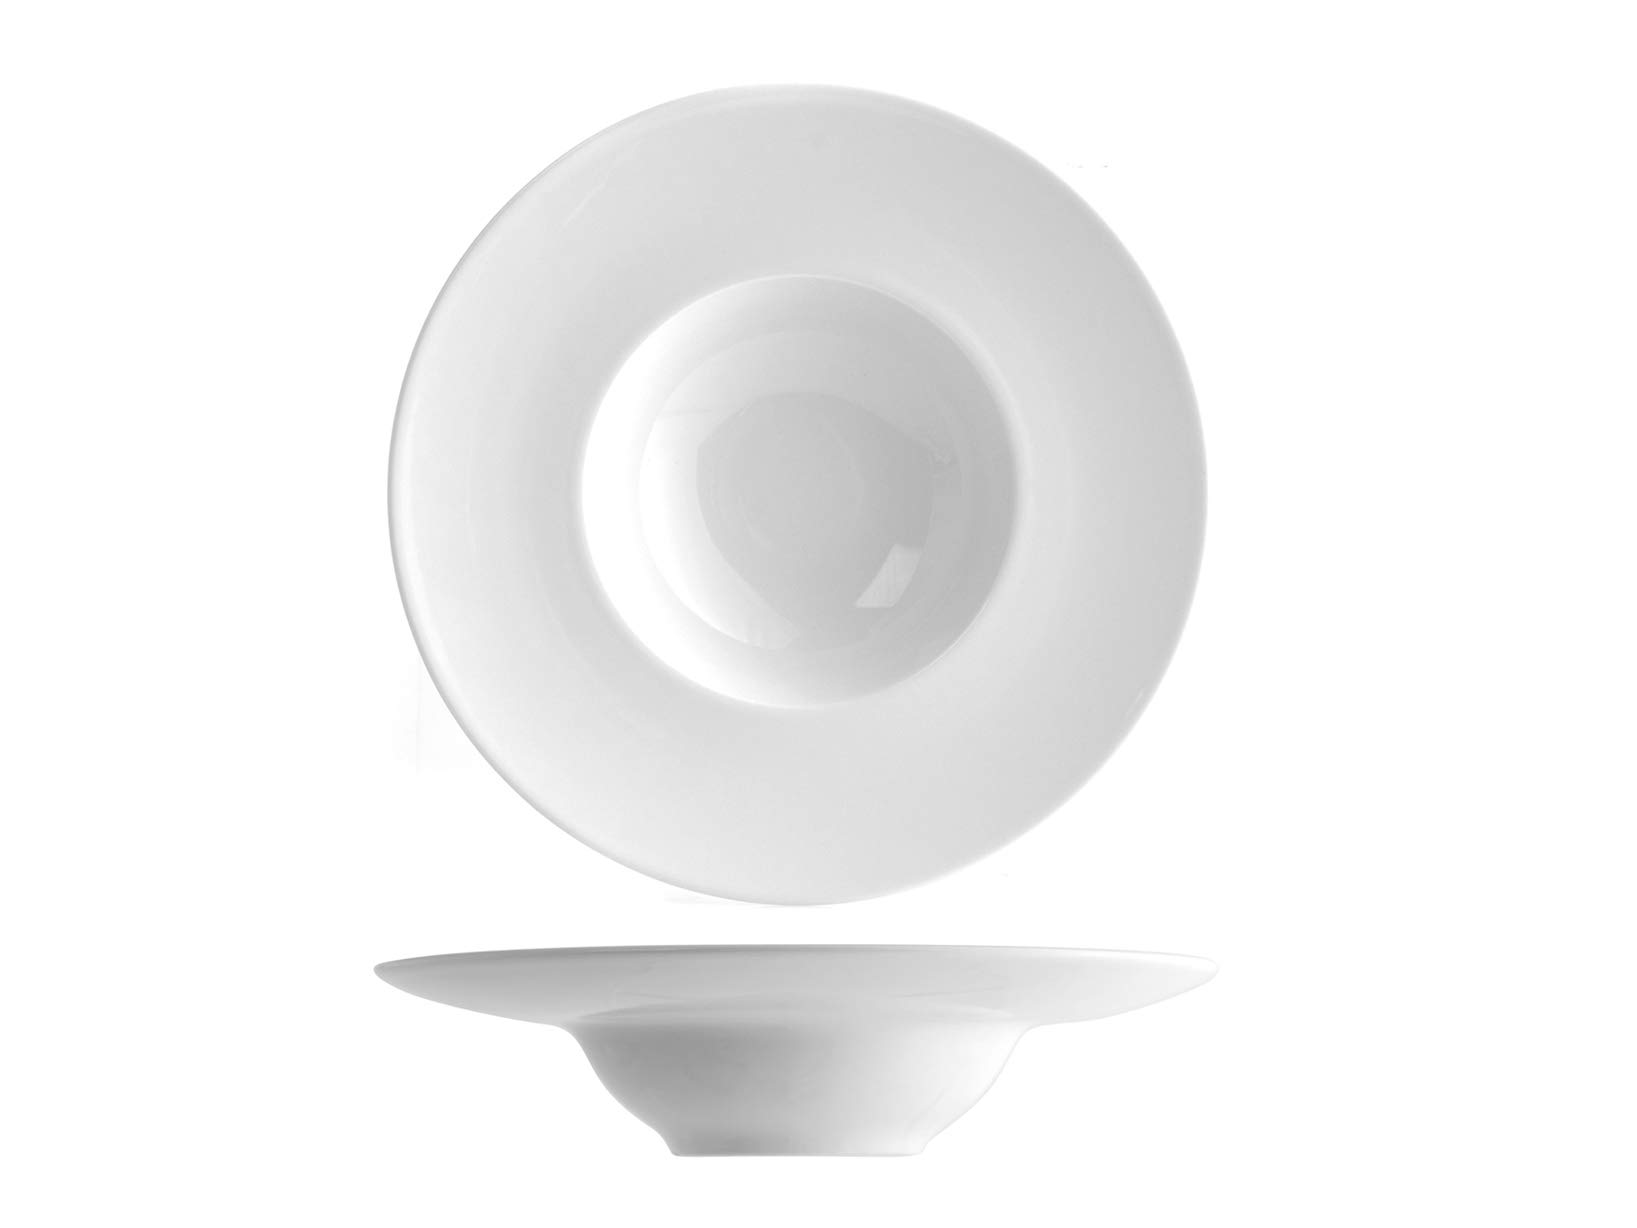 Saturnia Napoli k-Bowl, Porzellan, Weiß, 24 cm, 6 Stück, Bianco, 24 cm, 6